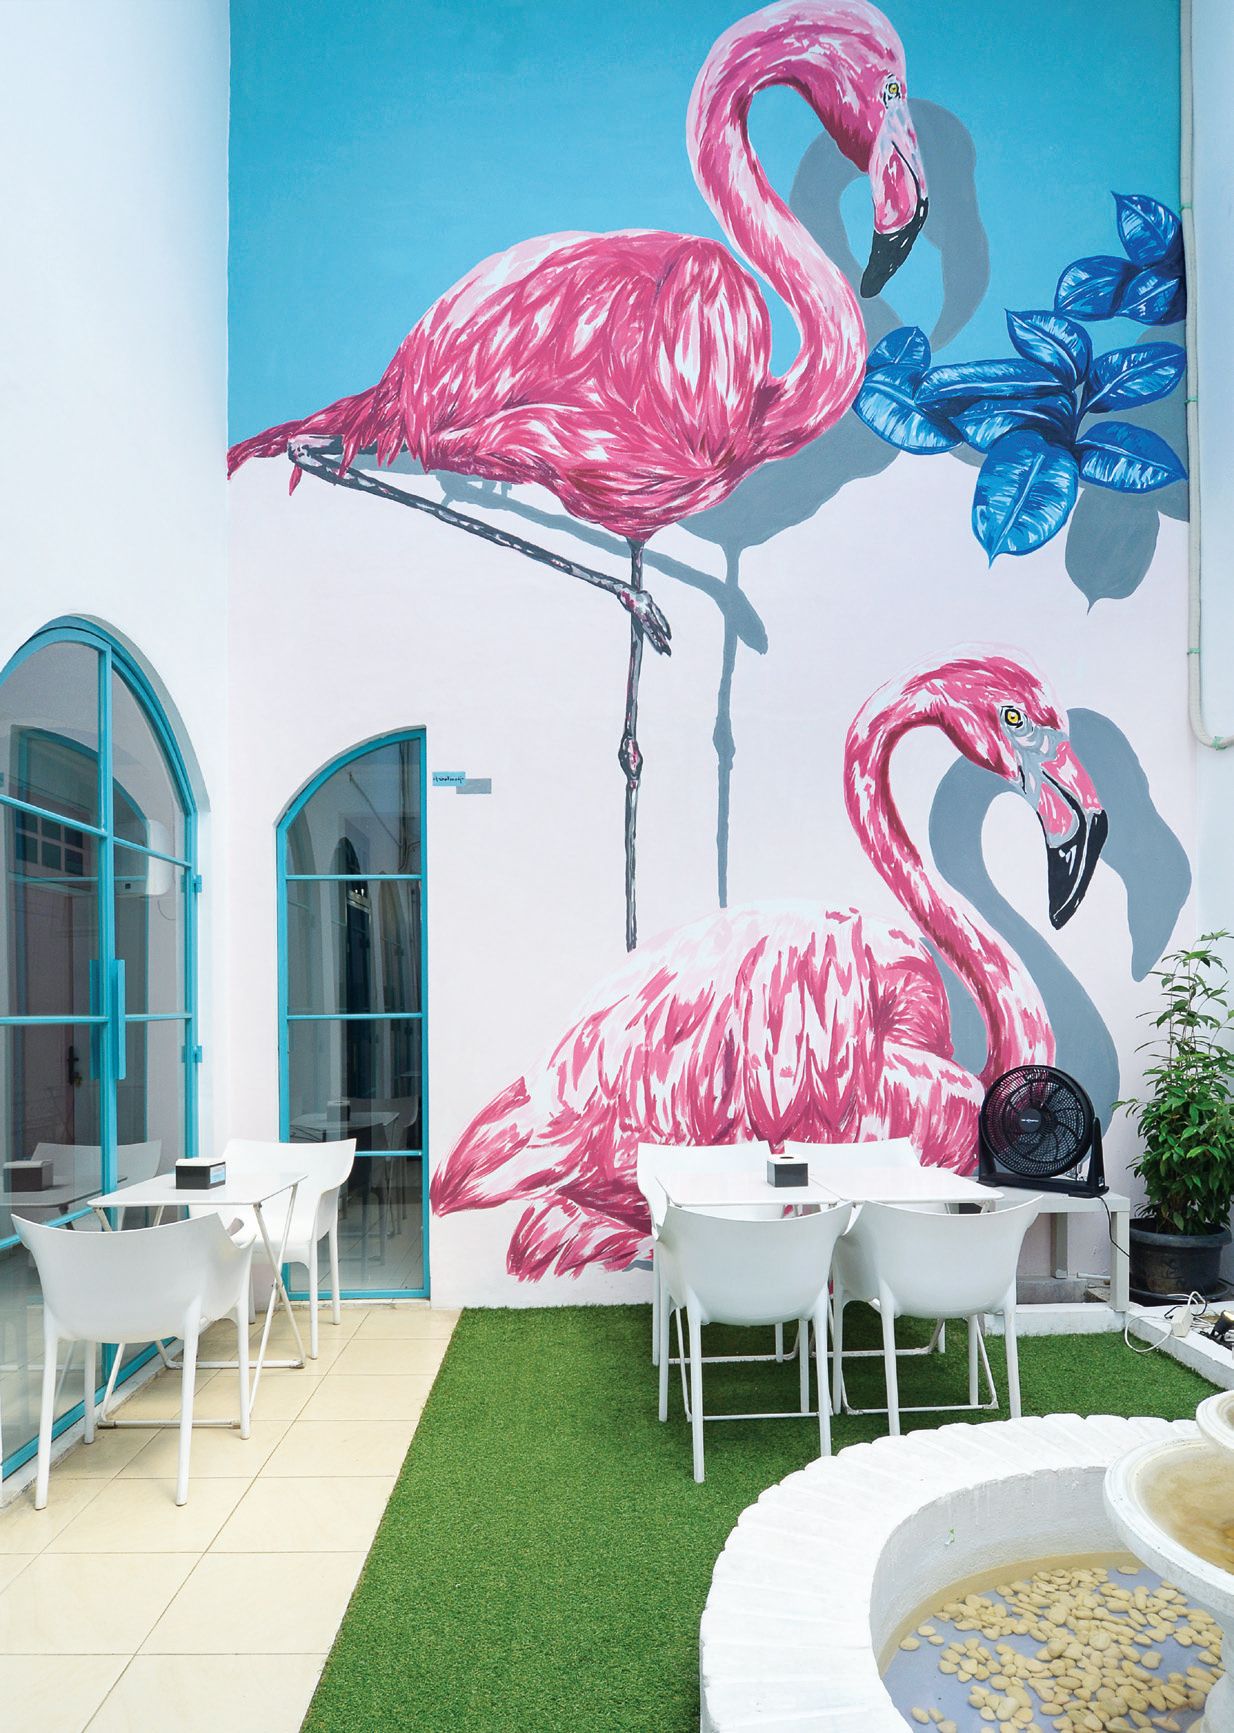 Begini Asiknya Piknik di Cafe Bergaya Tropis, Lengkap dengan Taman dan Mural!